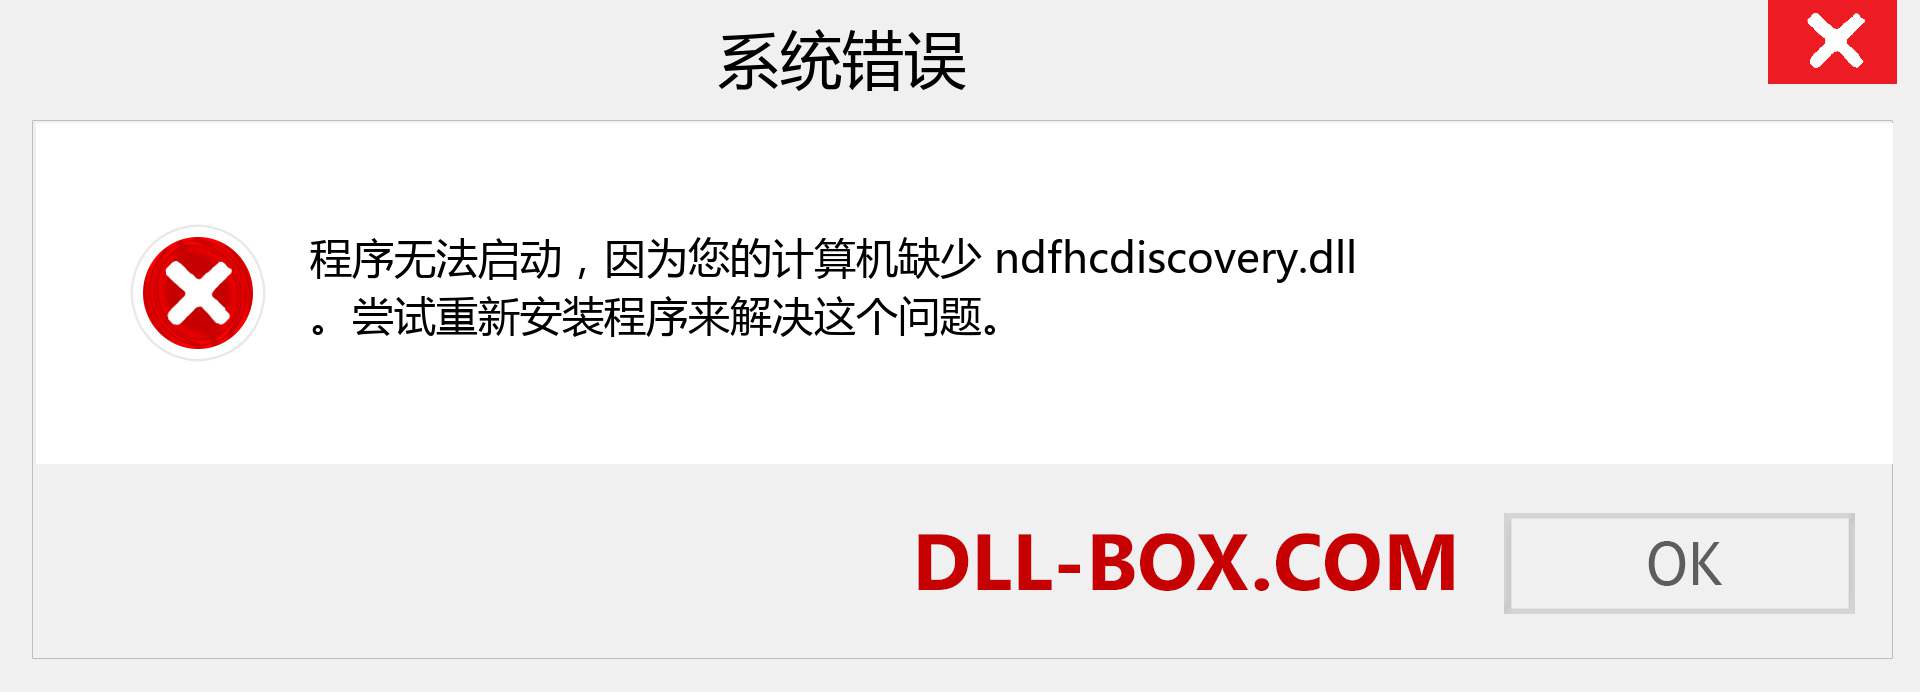 ndfhcdiscovery.dll 文件丢失？。 适用于 Windows 7、8、10 的下载 - 修复 Windows、照片、图像上的 ndfhcdiscovery dll 丢失错误